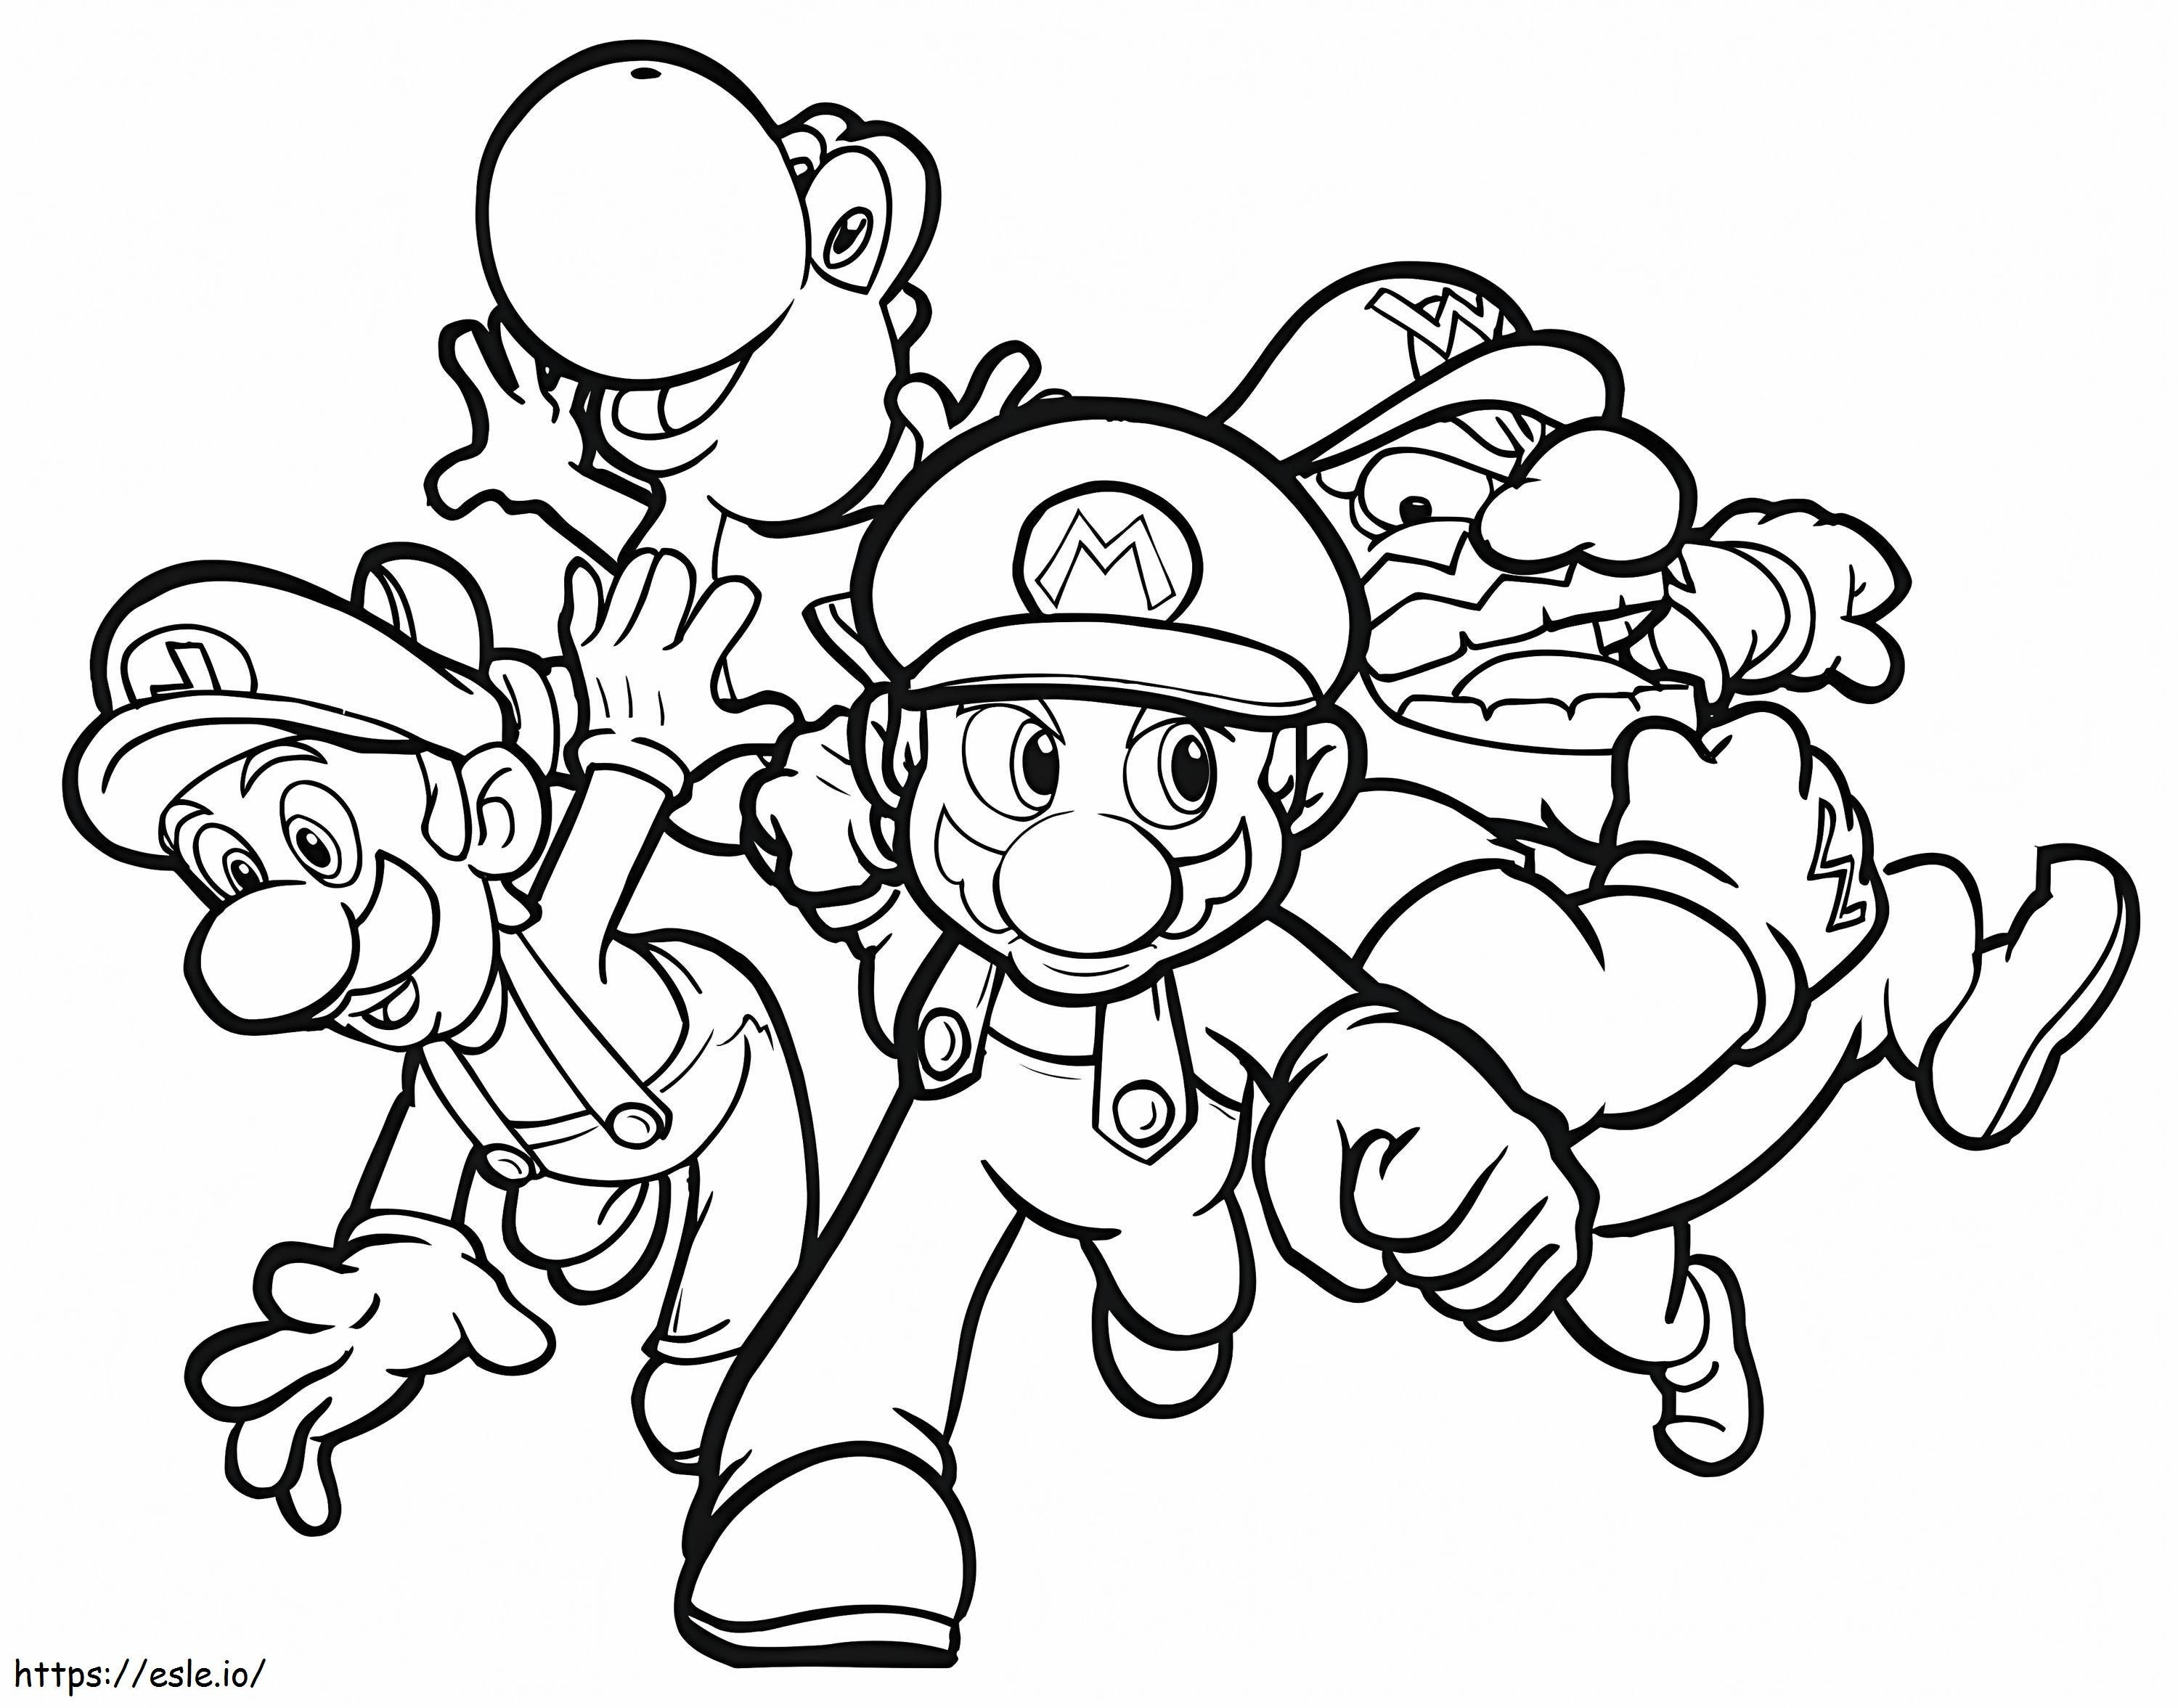 A Mario 1 szereplői kifestő